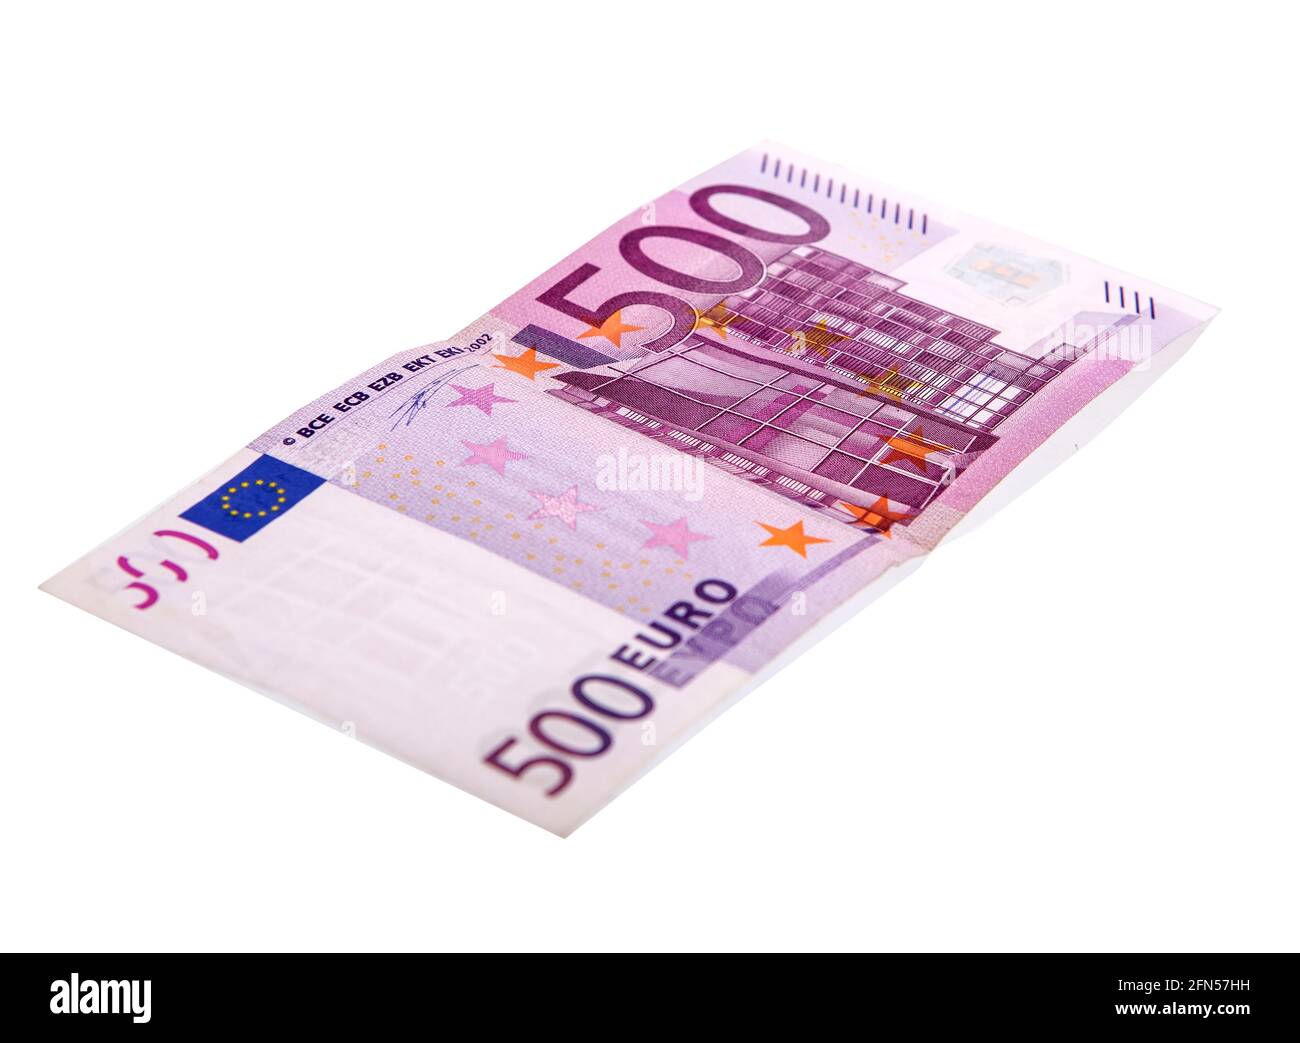 Ein 500 Euro Schein. Diesen Geldschein möchte die Bundesregierung gerne abschaffen. Stock Photo